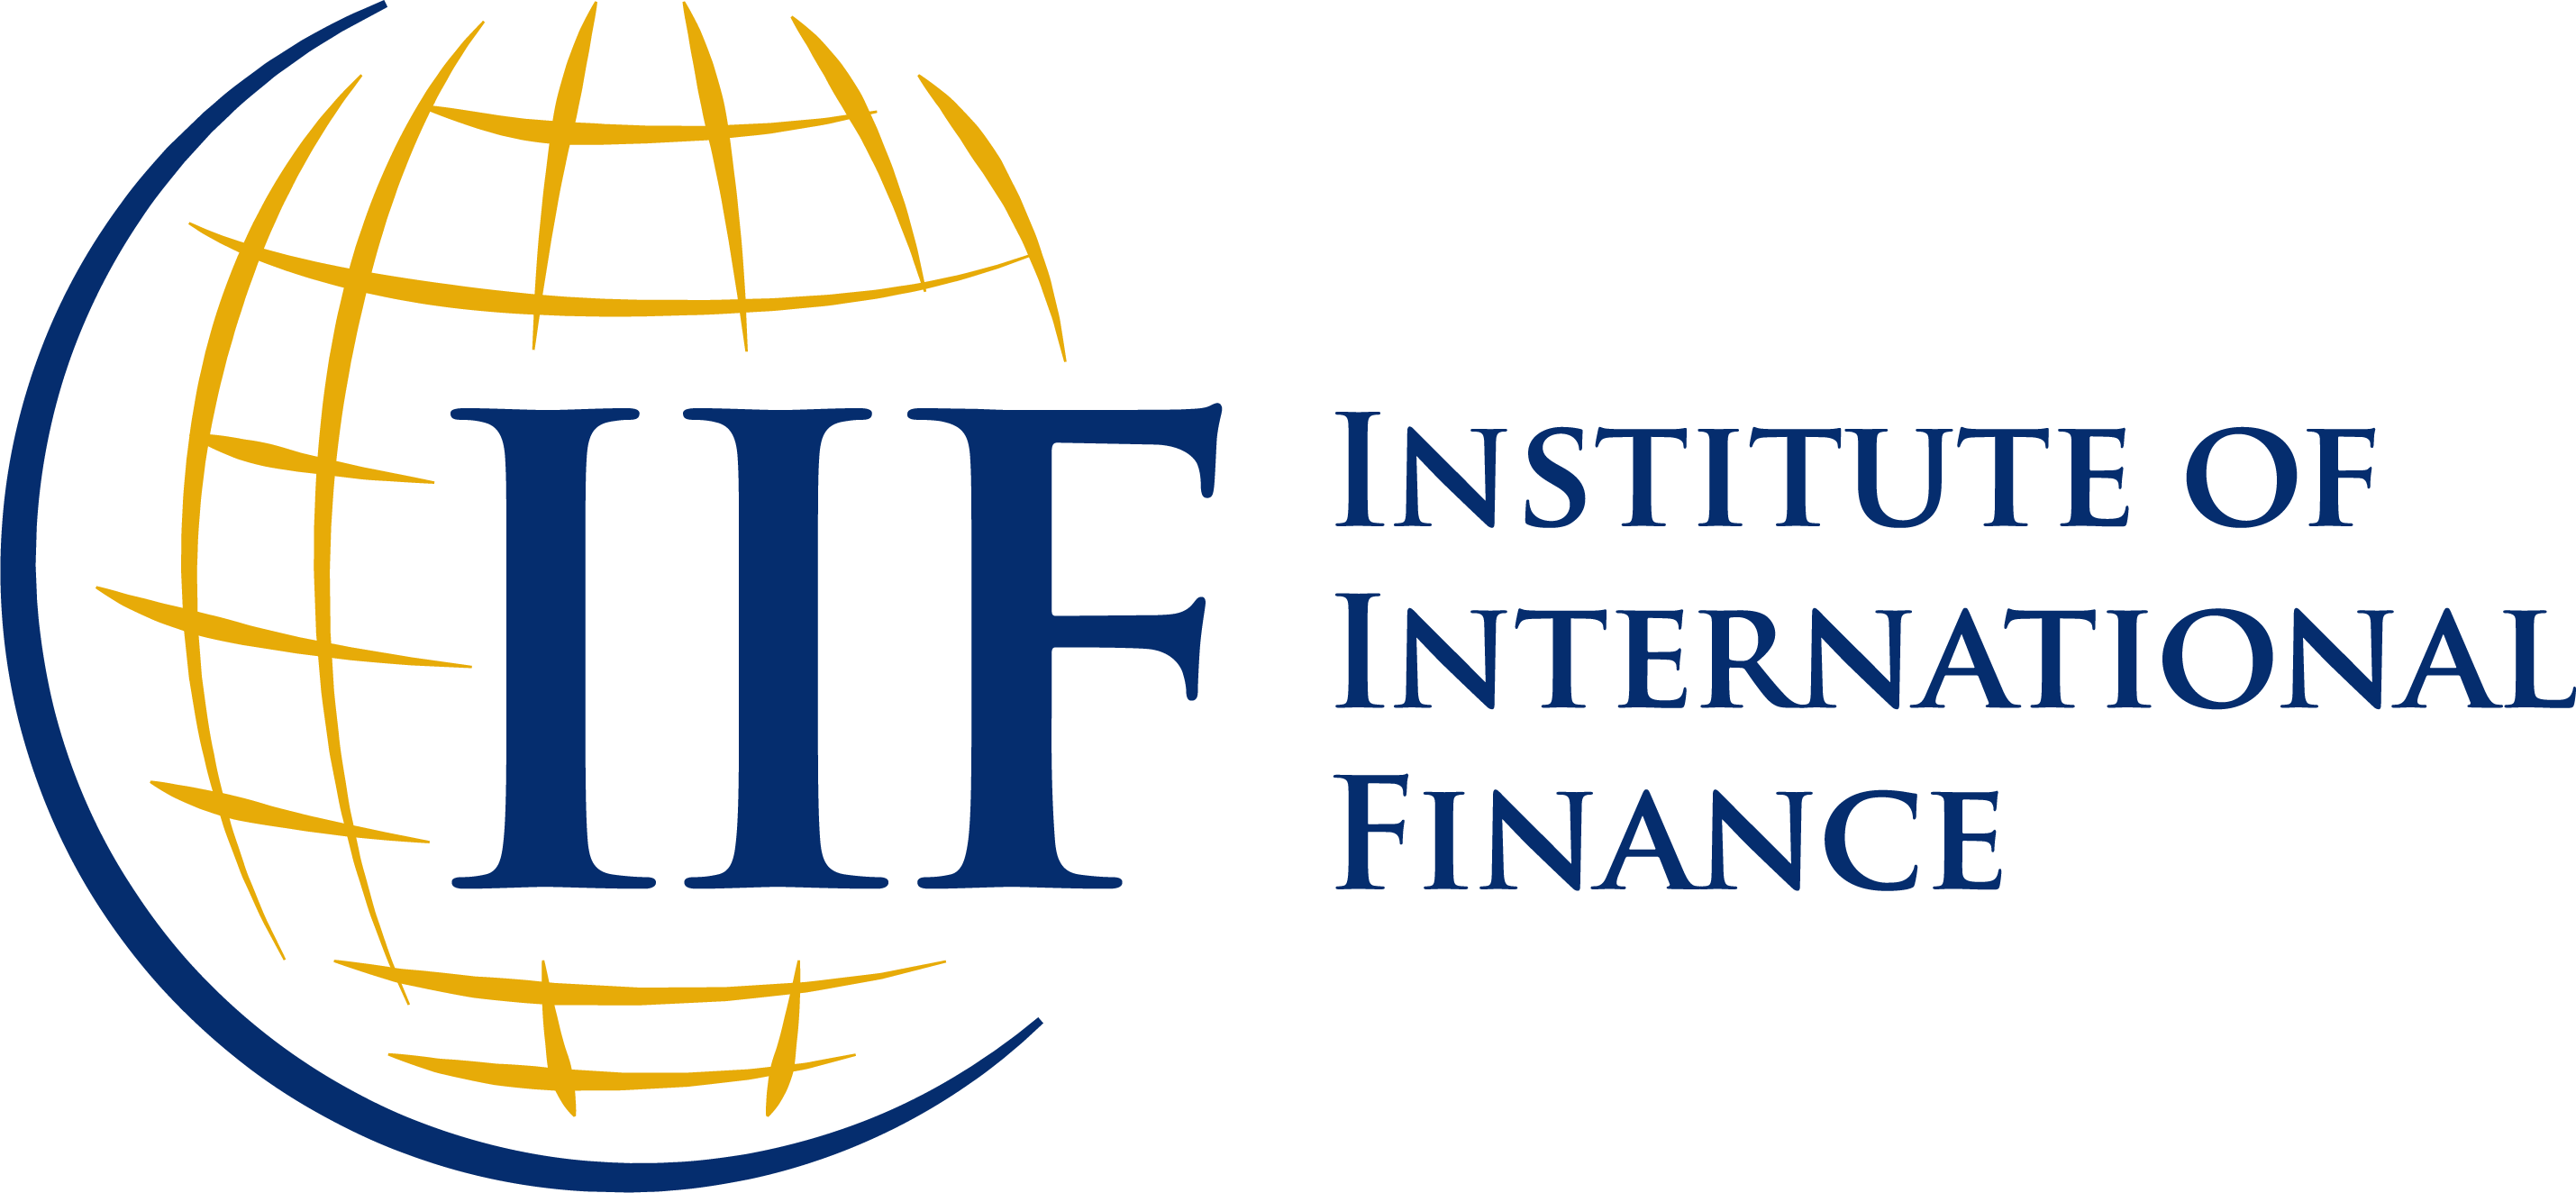 Global debt hits record $307 trillion, debt ratios climb -IIF